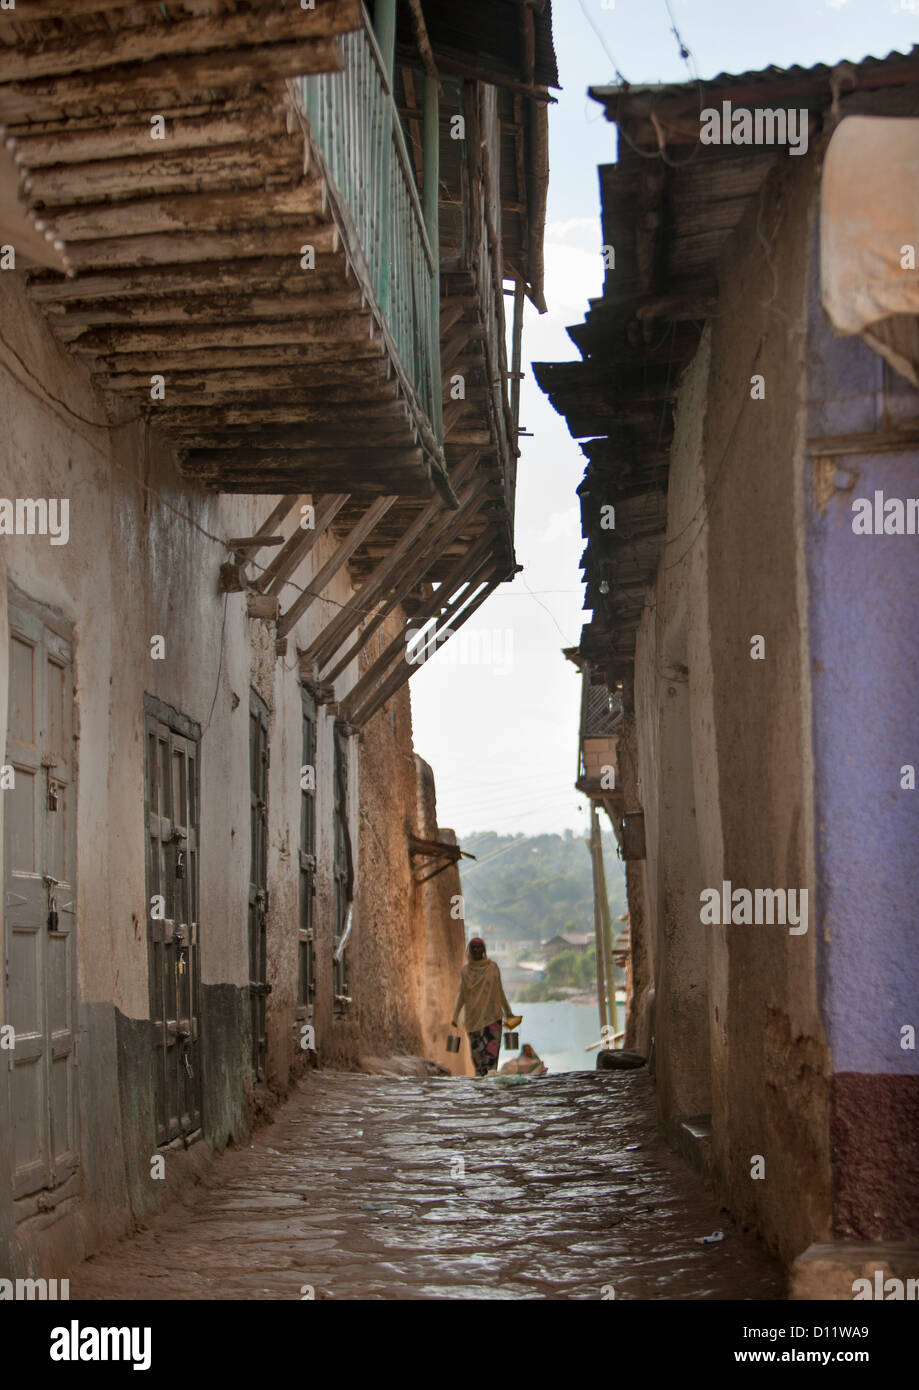 Gasse In der alten Stadt von Harar, Äthiopien Stockfoto